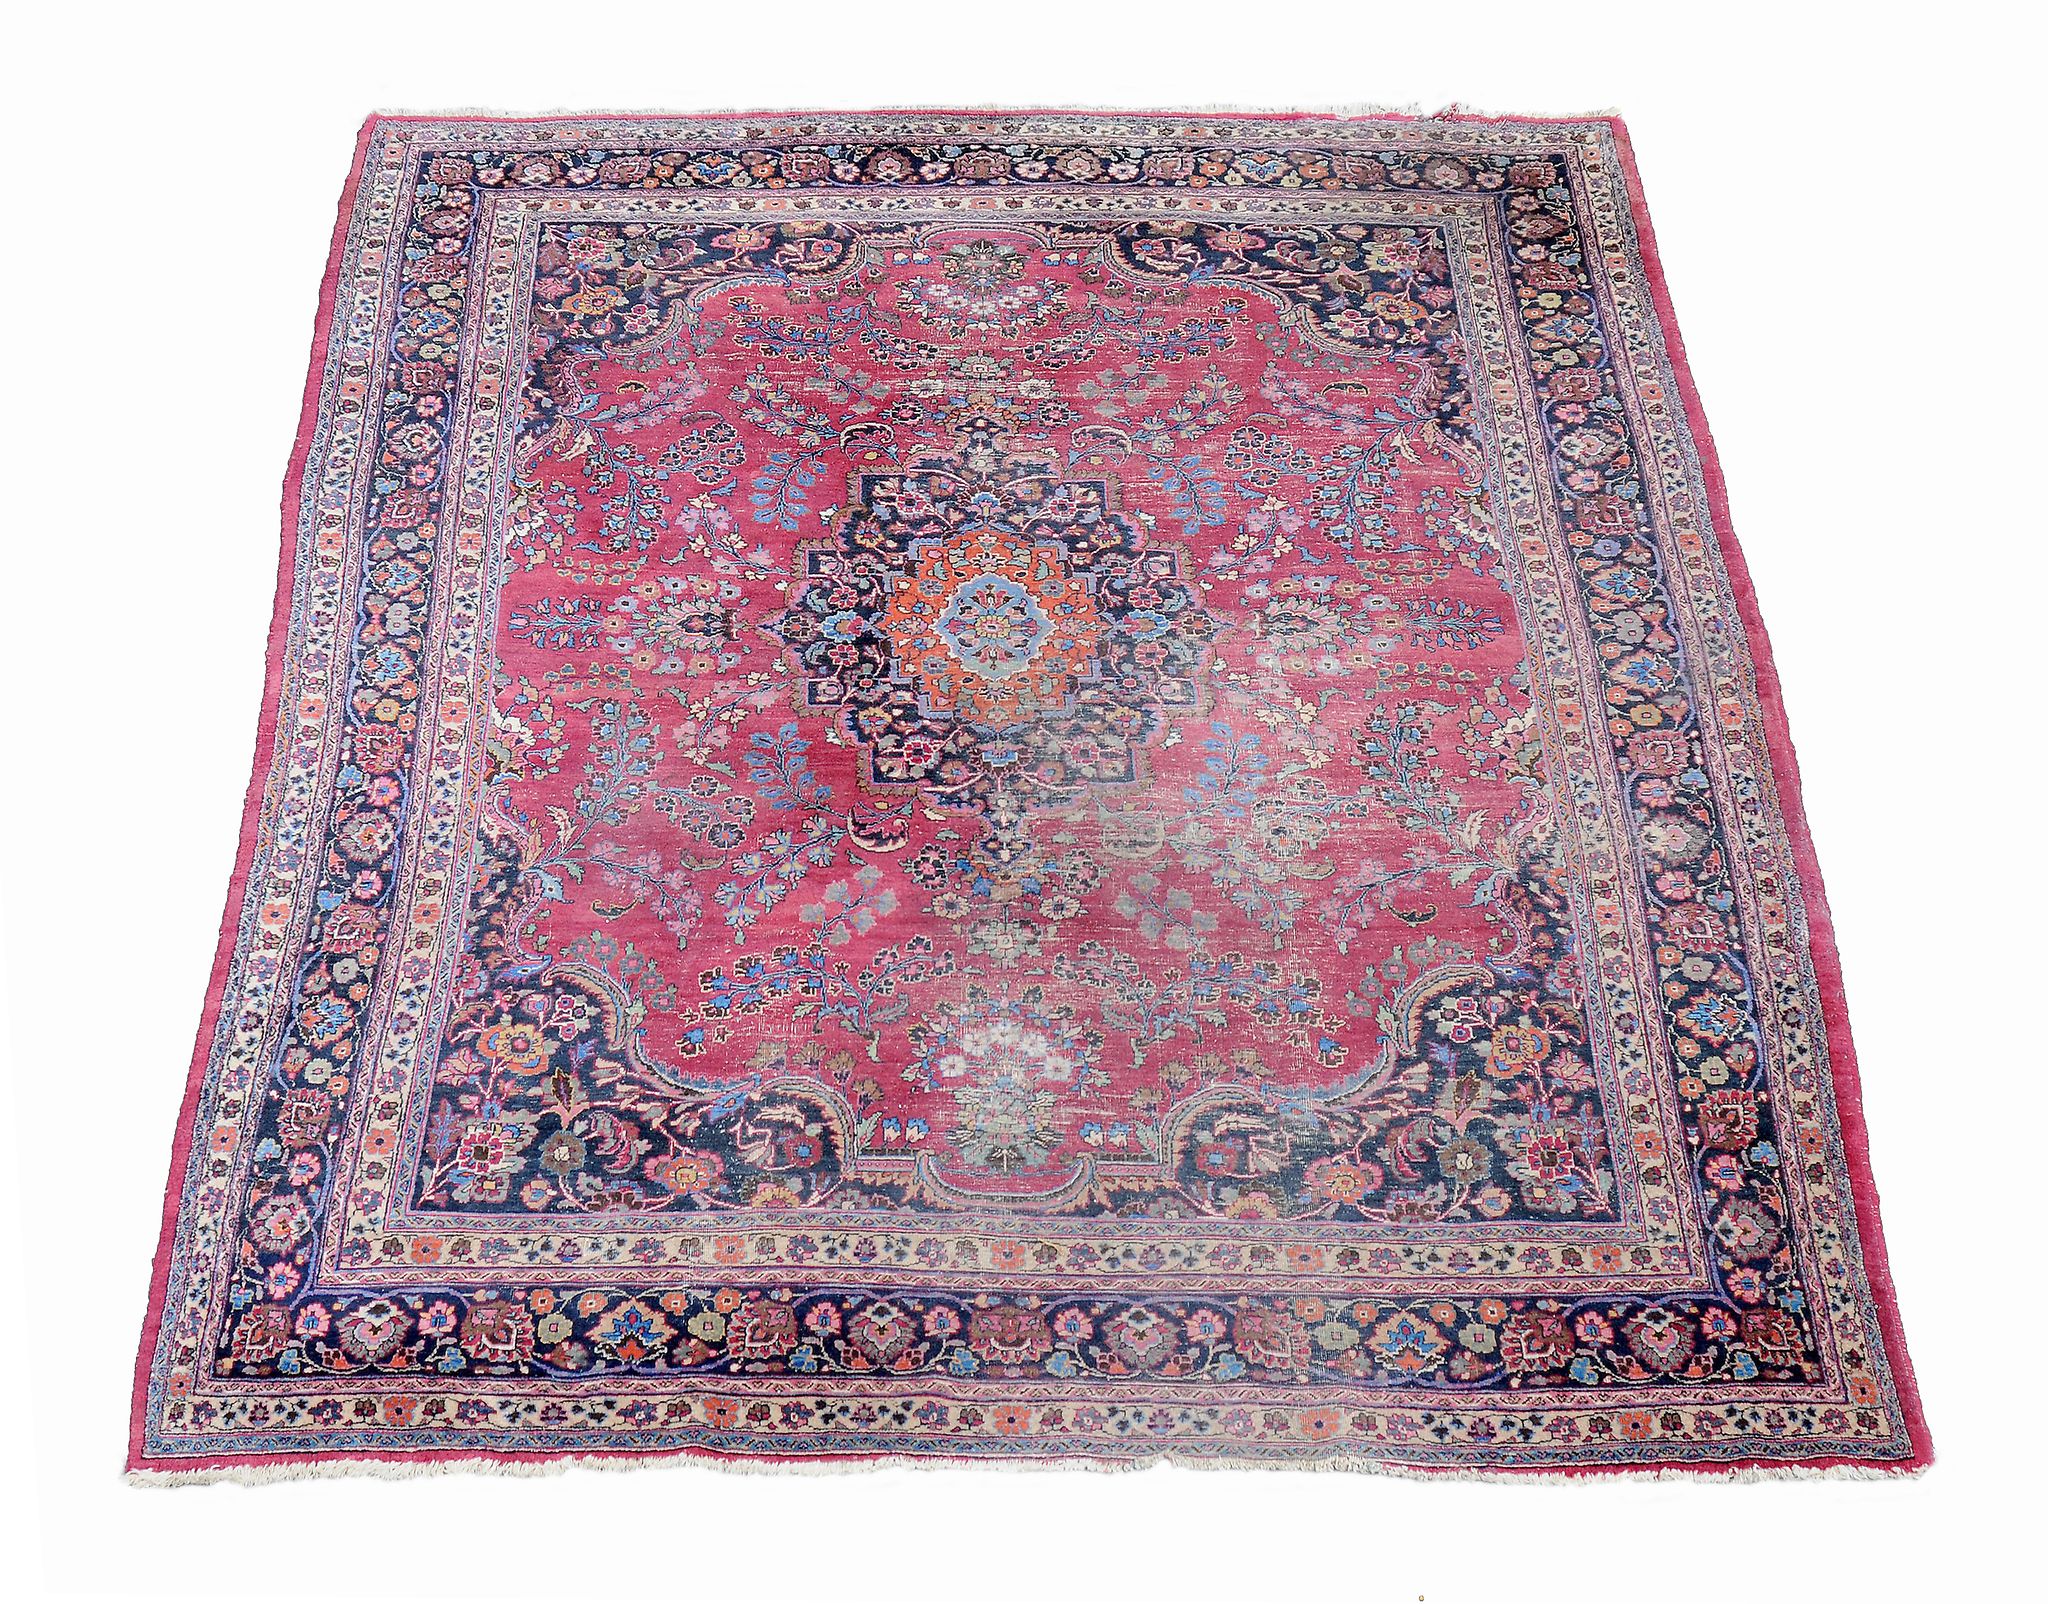 A Tabriz style carpet, approximately 302 x 410cm